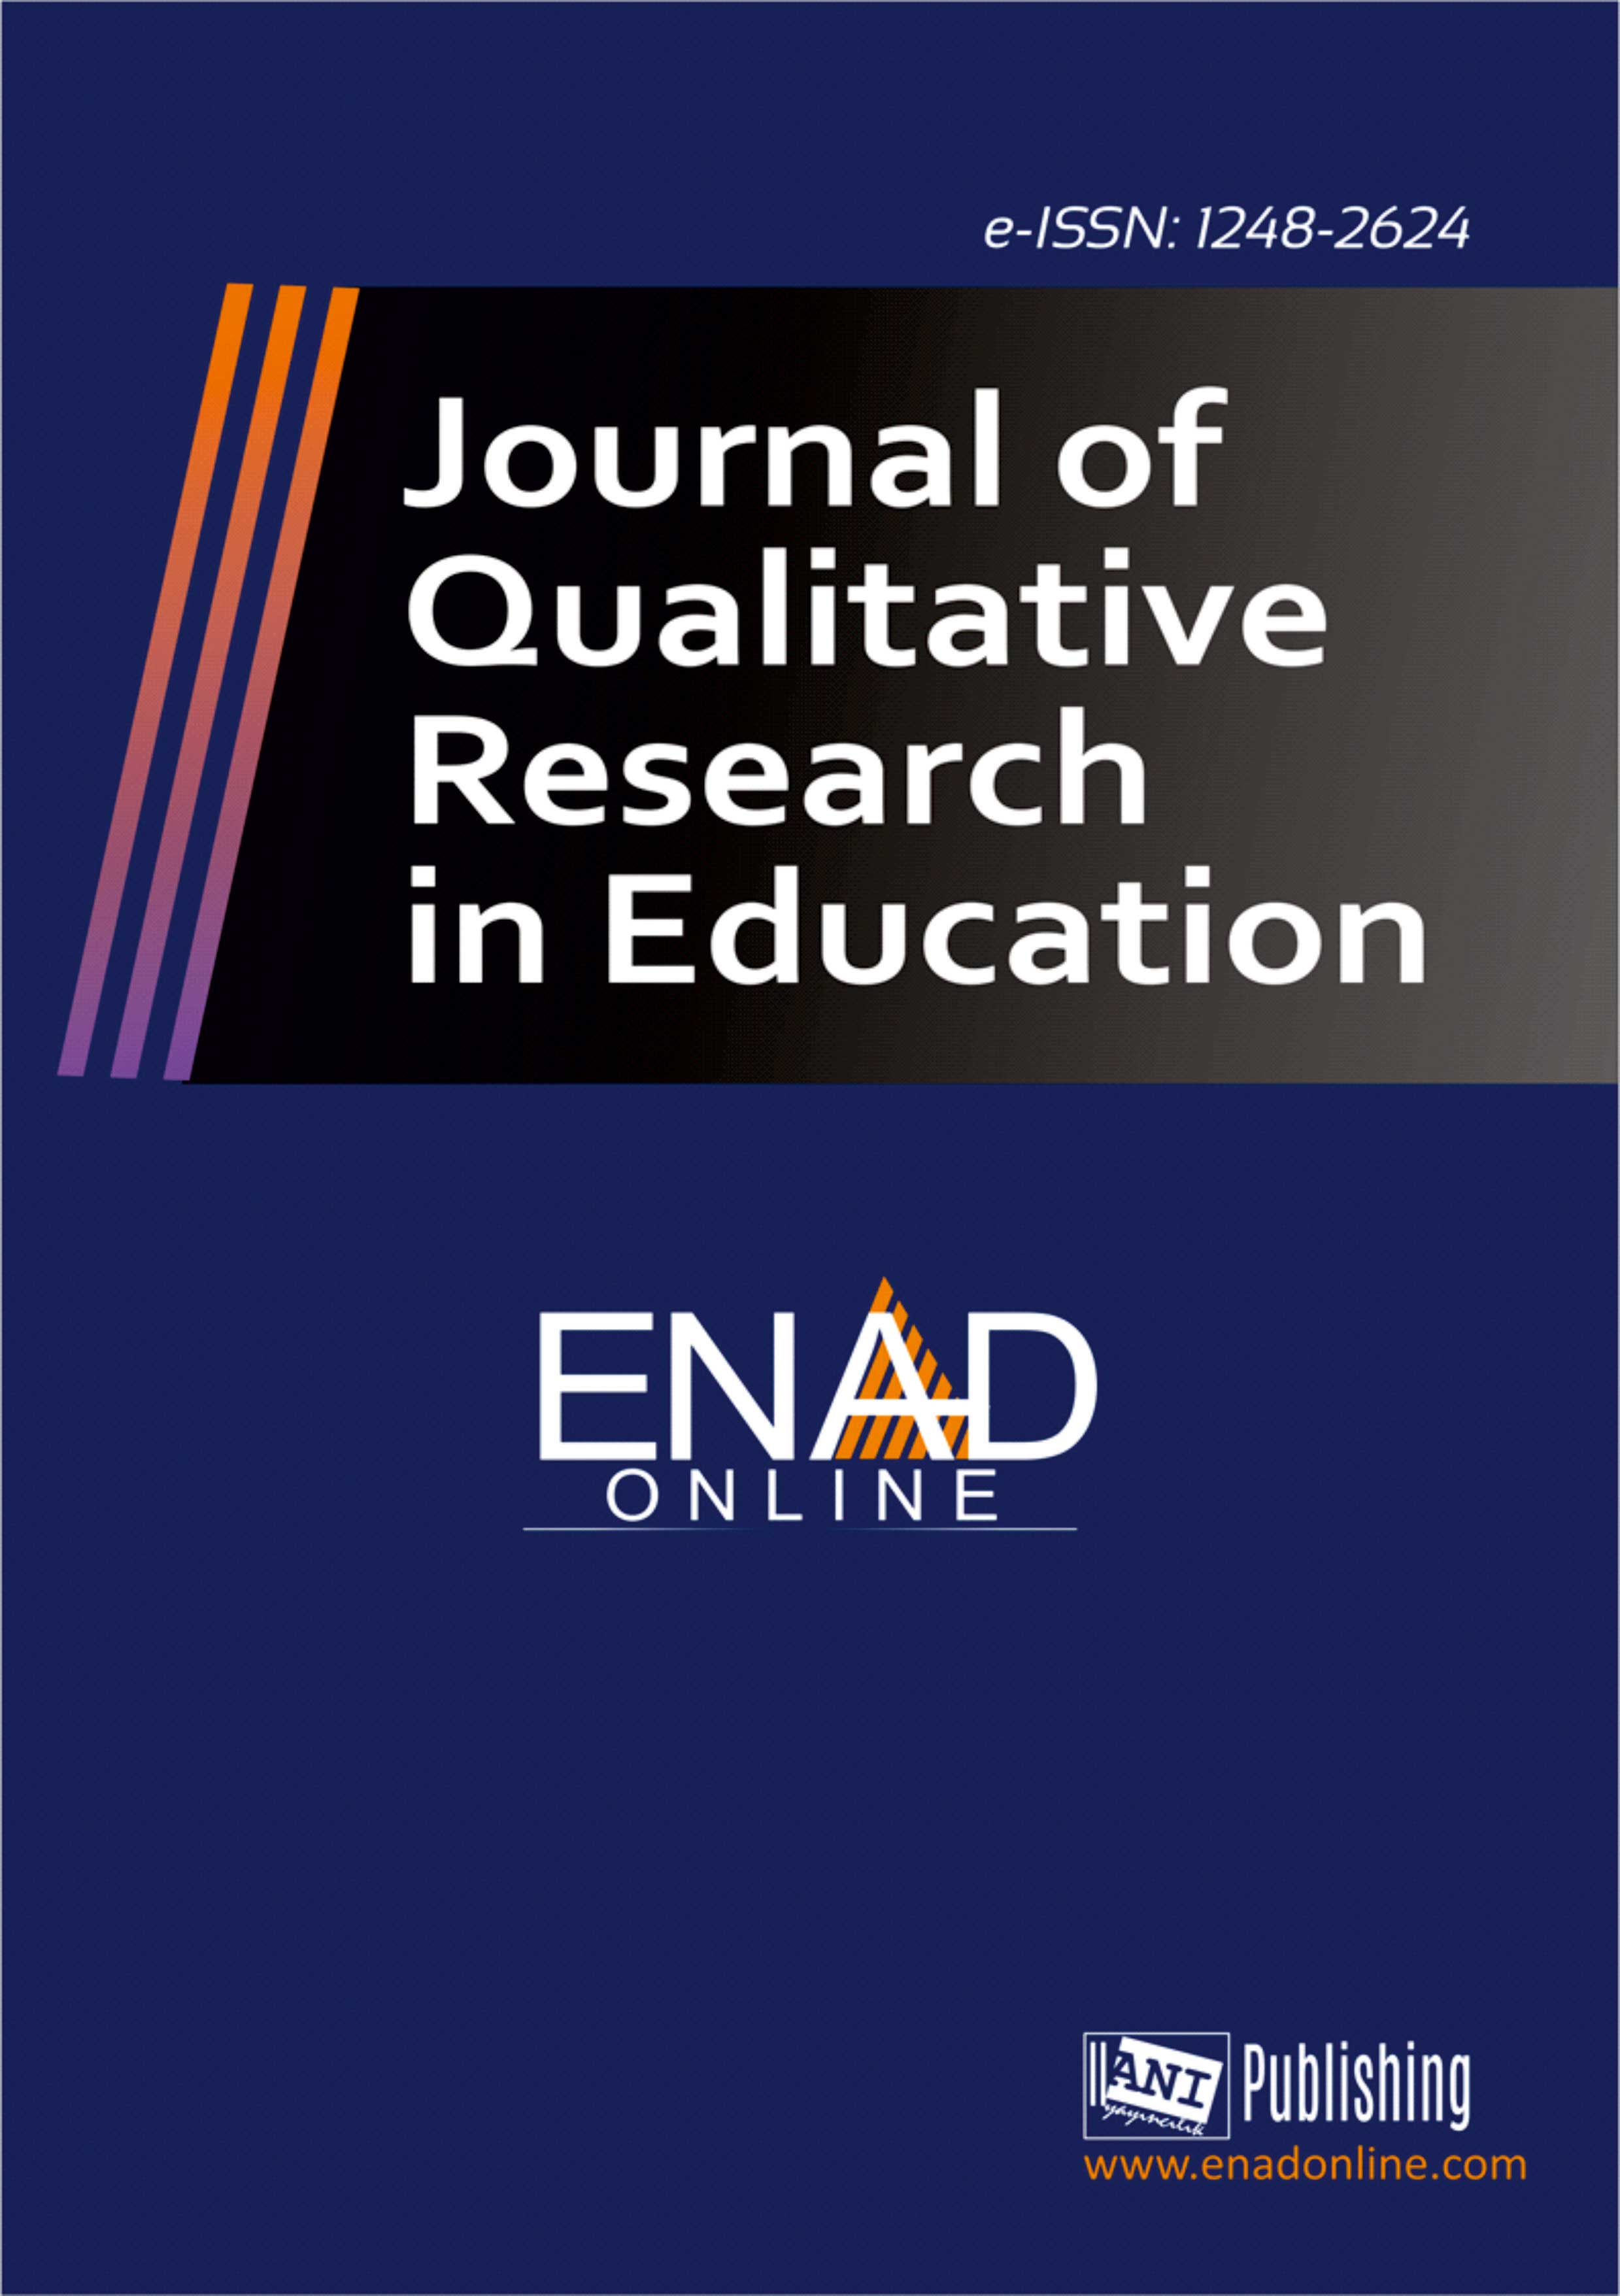 					Cilt 3 Sayı 1 (2015): Eğitimde Nitel Araştırmalar Dergisi Gör
				